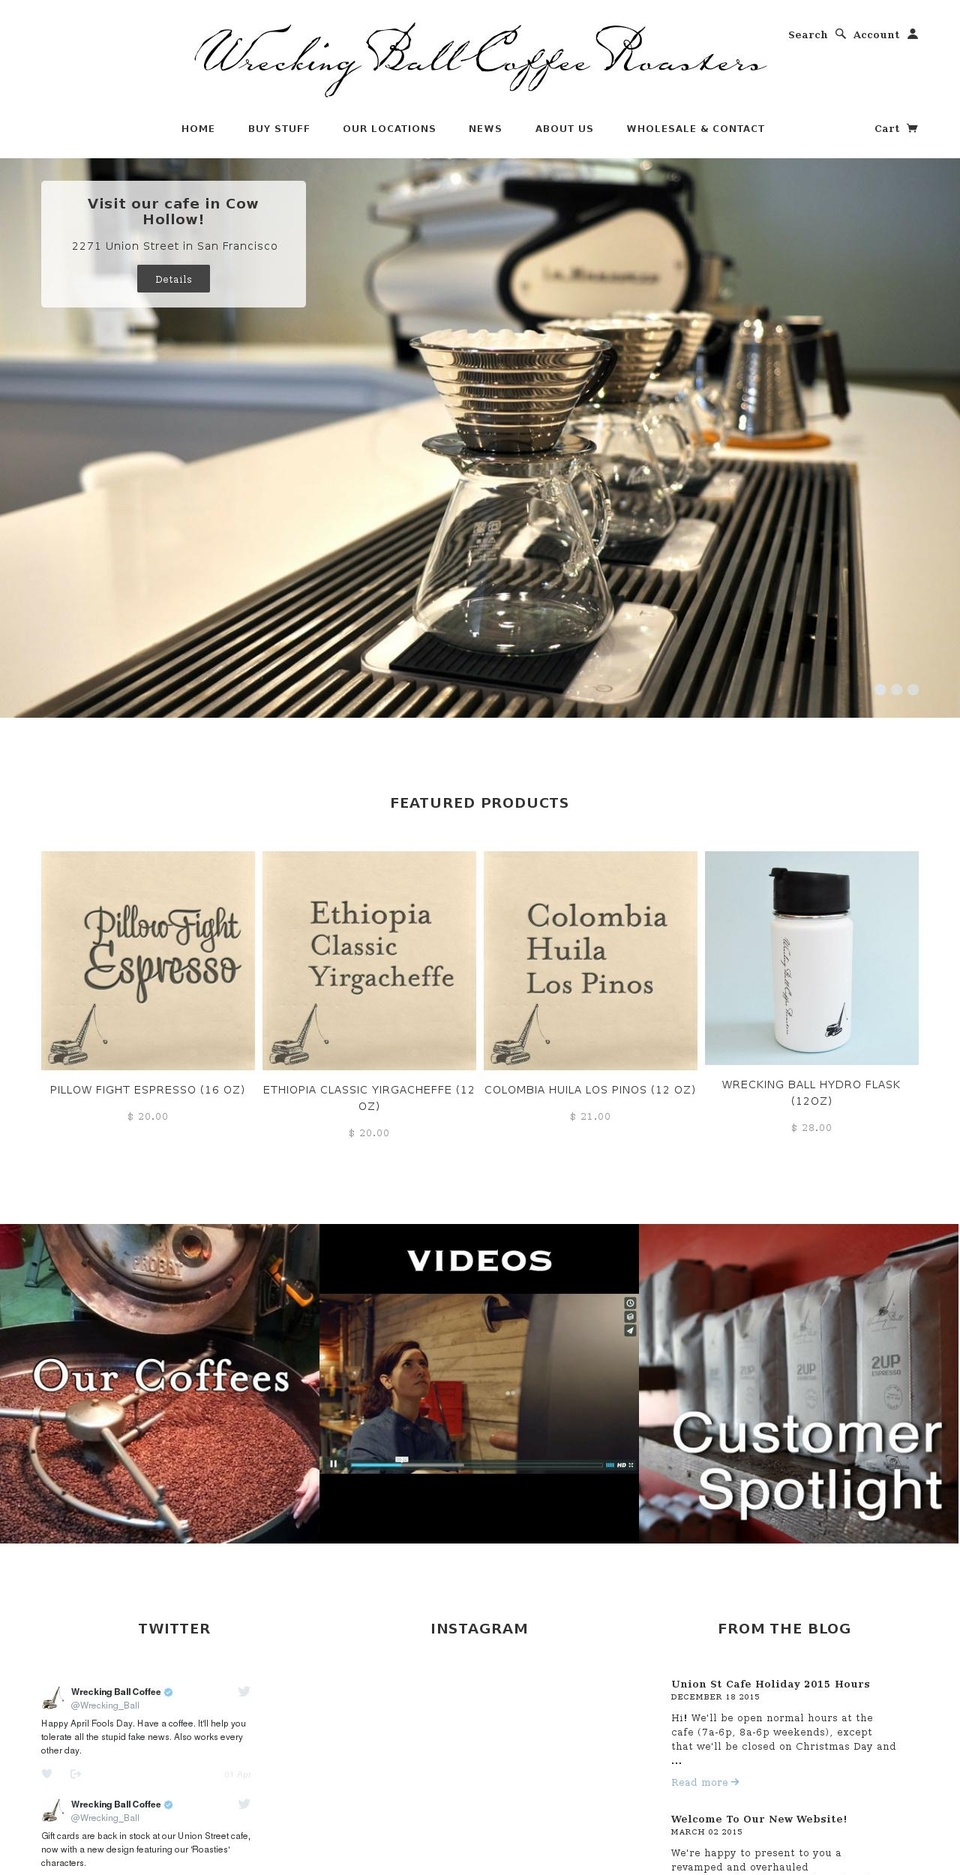 wreckingballcoffee.com shopify website screenshot